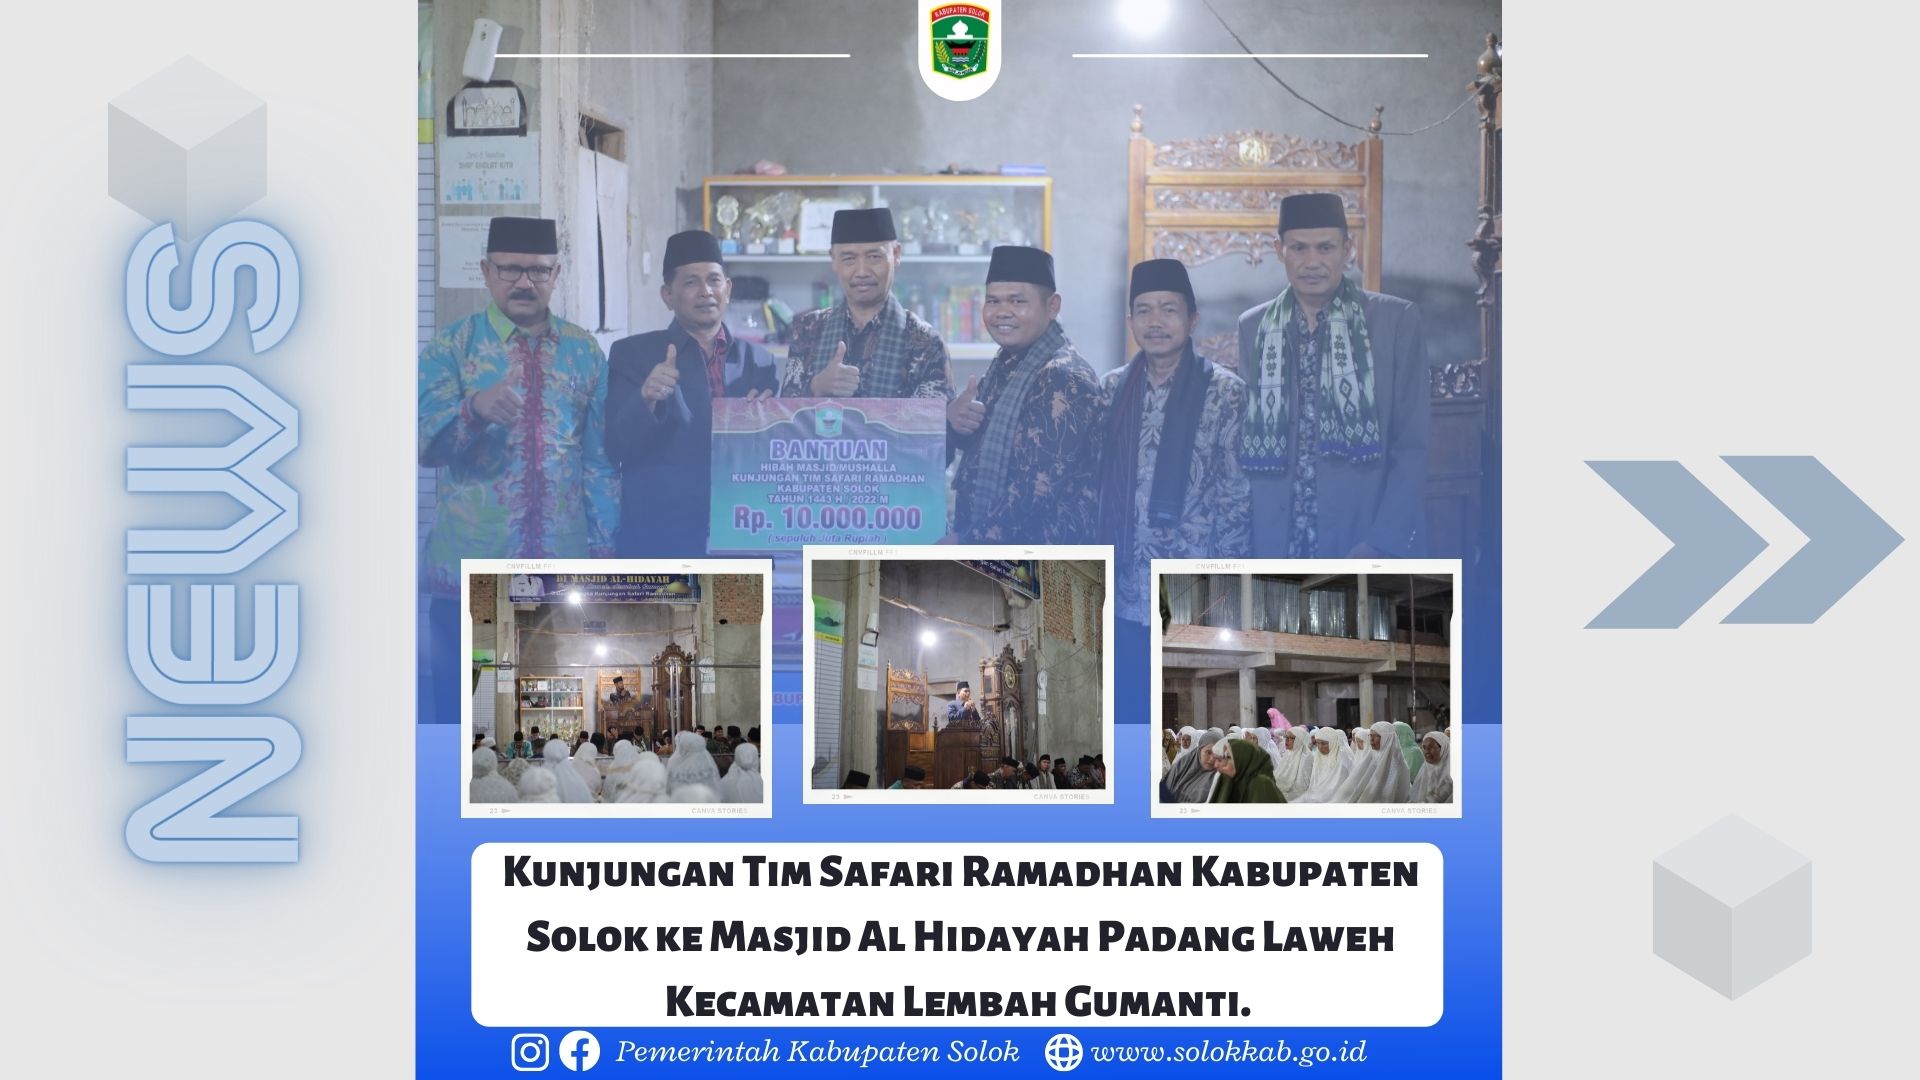 Kunjungan Tim Safari Ramadhan Kabupaten Solok ke Masjid Al Hidayah Padang Laweh Kecamatan Lembah Gumanti